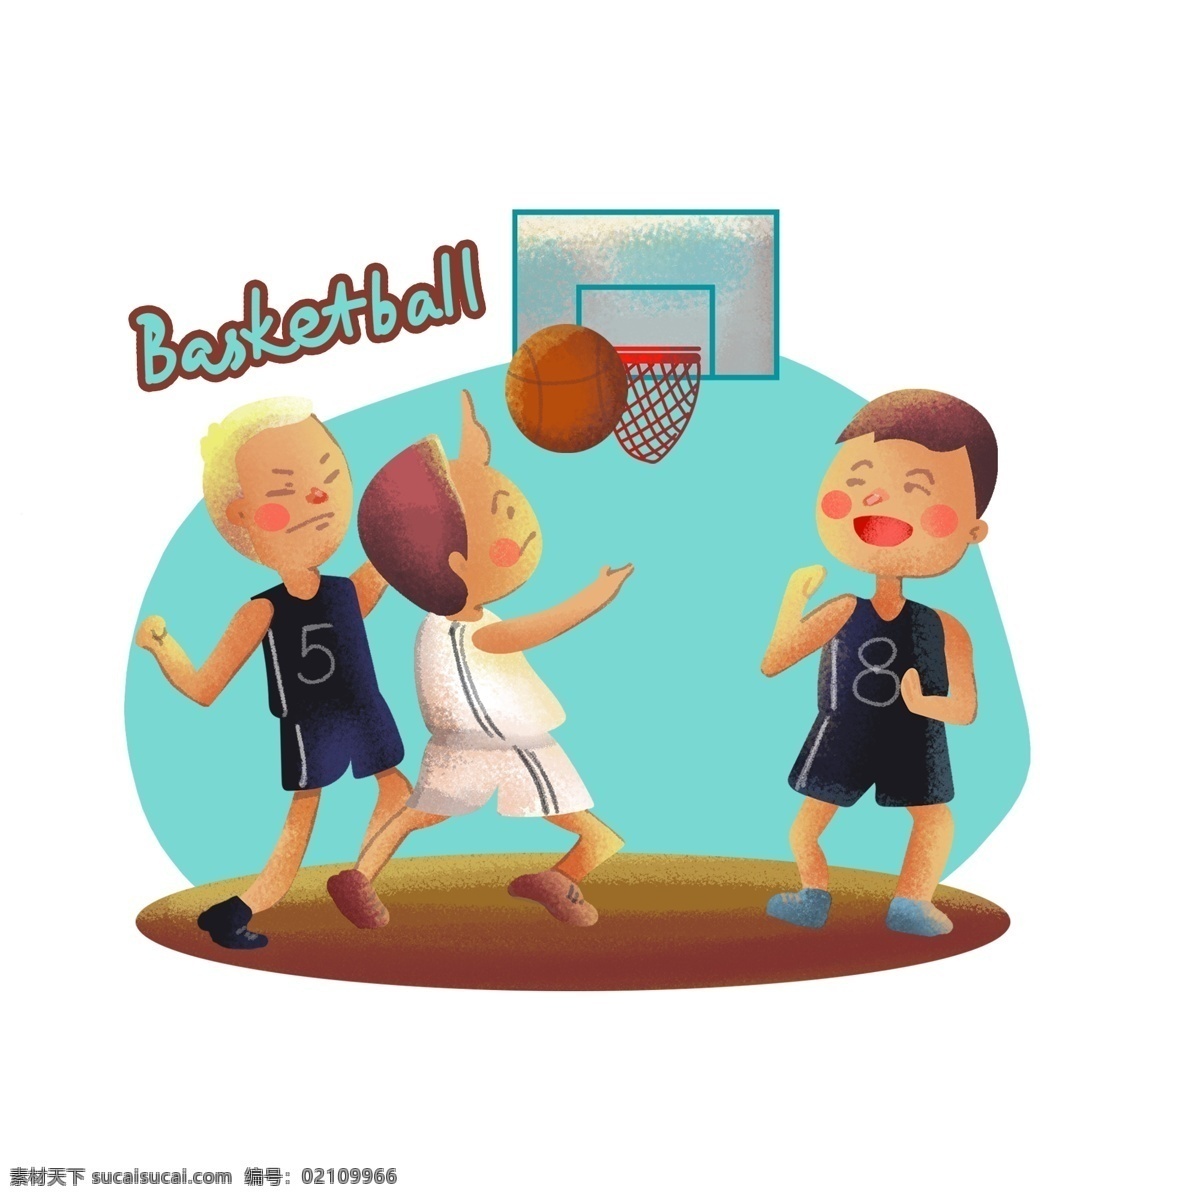 可爱 卡通 各类 体育运动 锻炼 人物 元素 体育 运动 健康 生活 动态 热量 比赛 奥运会 运动员 篮球 nba